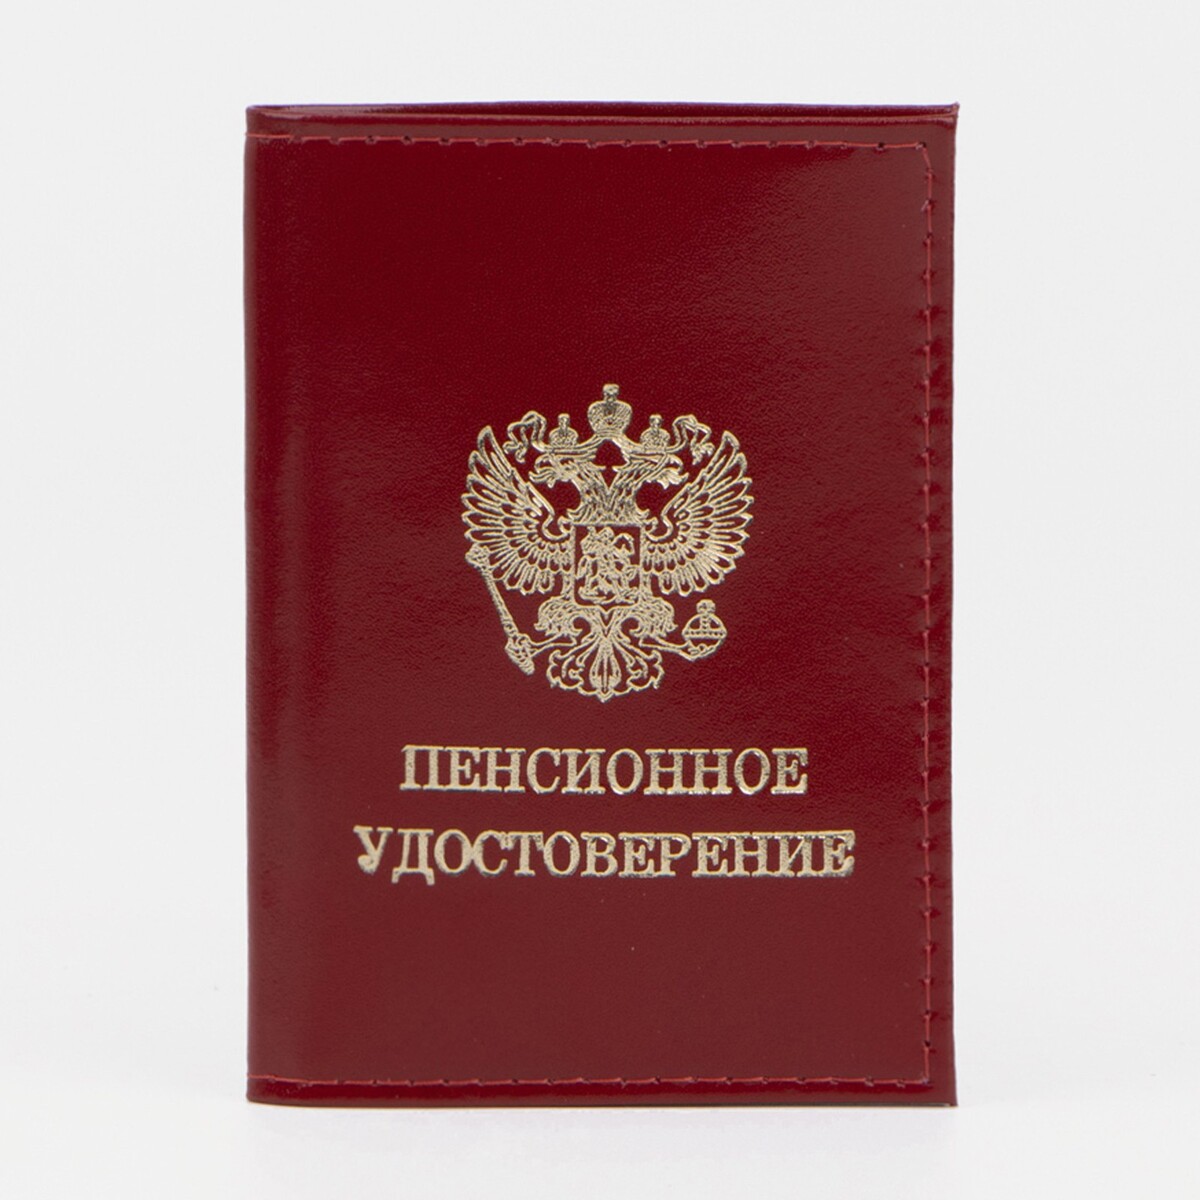 Обложка для пенсионного удостоверения, цвет красный обложка для пенсионного удостоверения